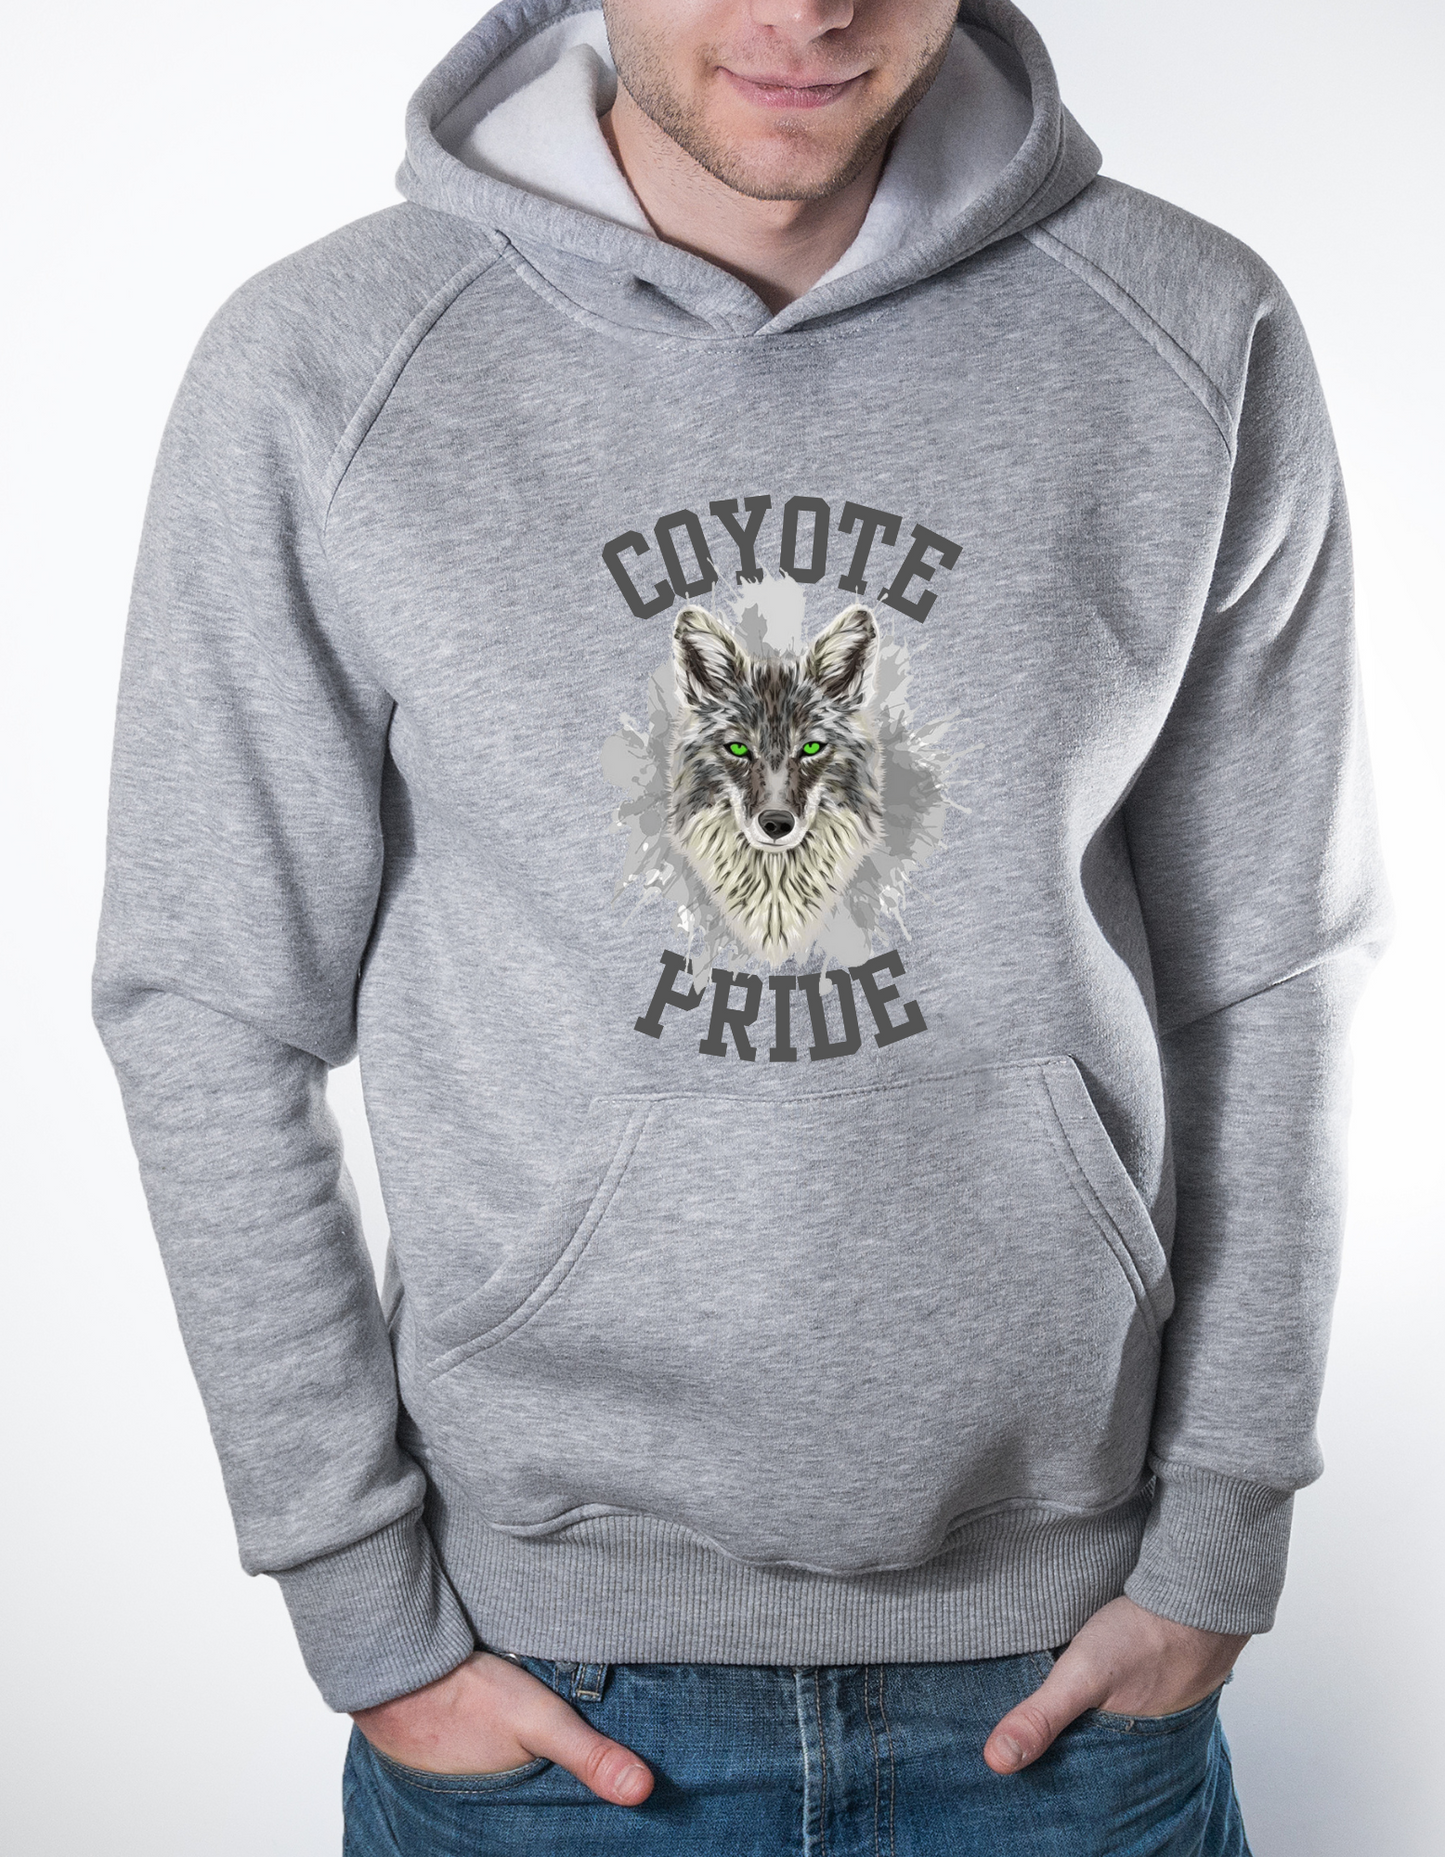 Coyote Pride Hoodie